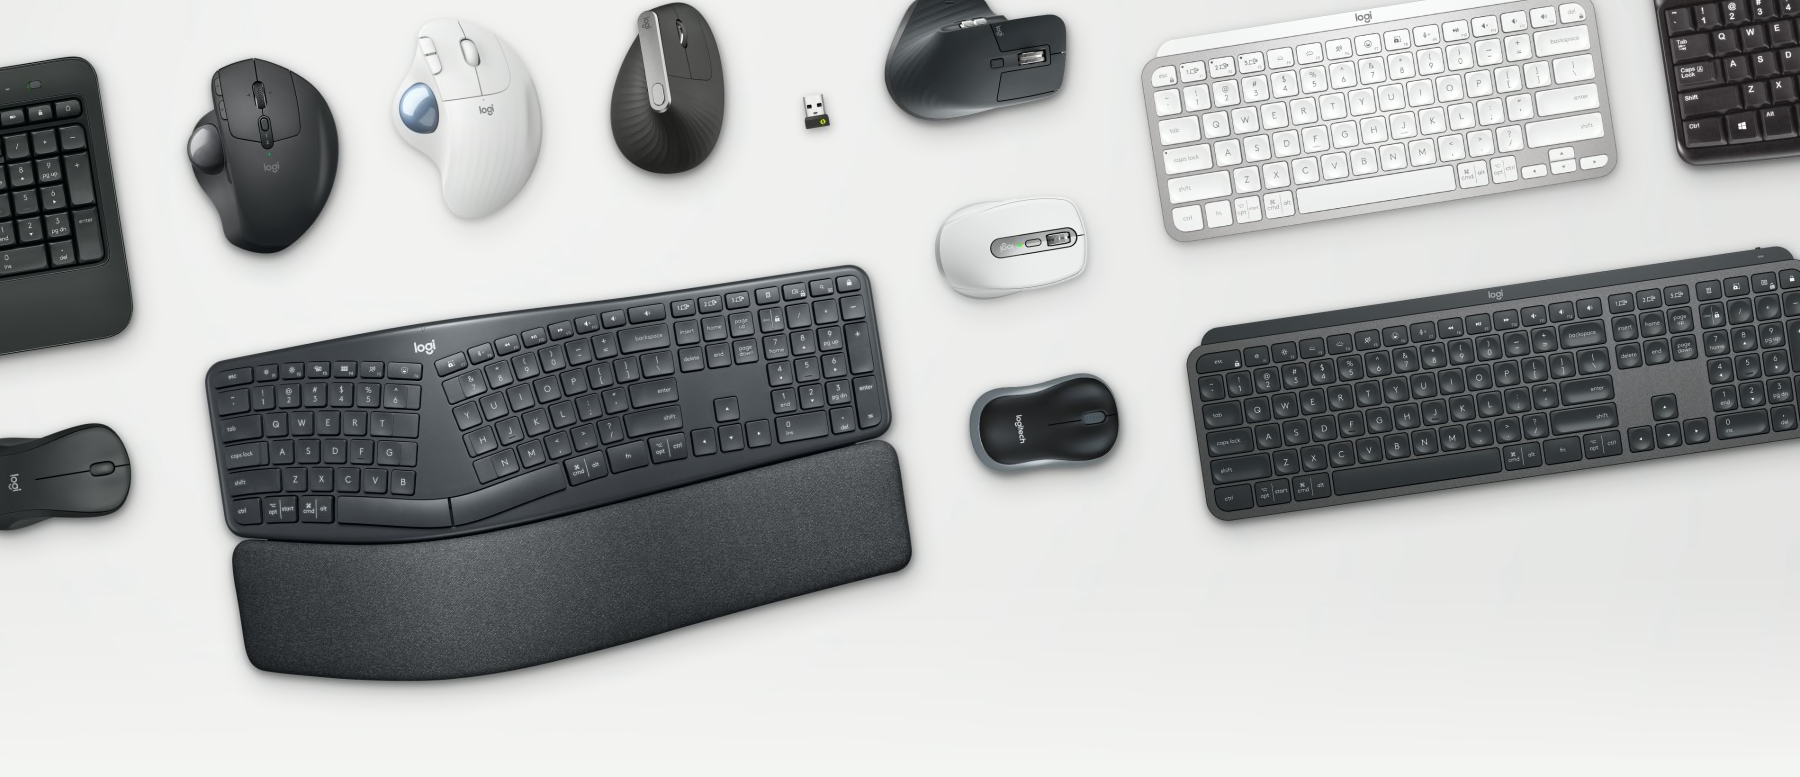 Narzędzia biznesowe – myszy i klawiatury Ergo na stole